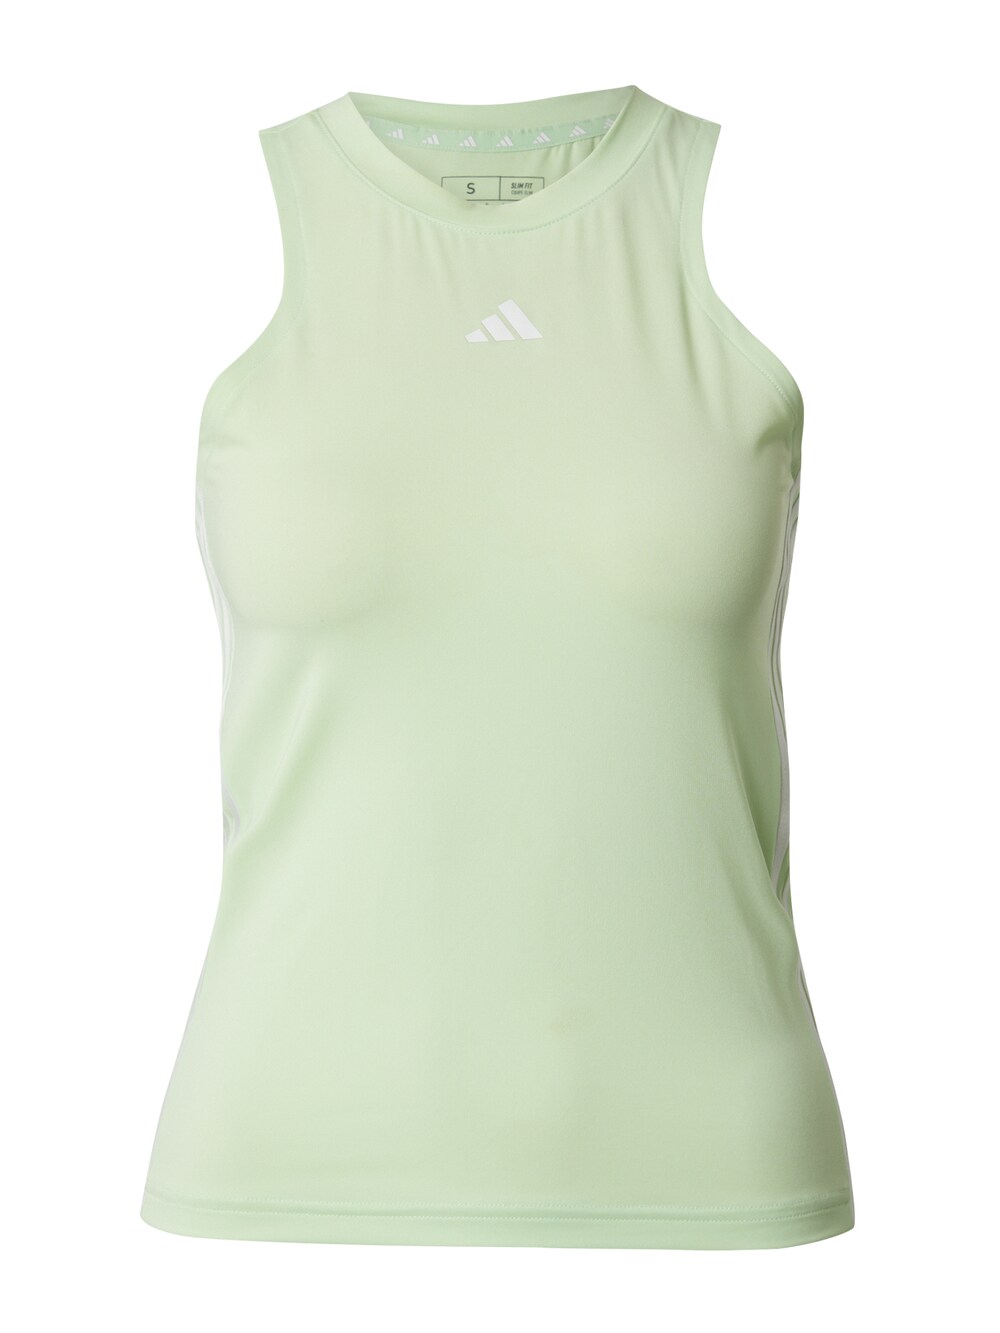 Спортивный топ Adidas Essentials, пастельно-зеленый